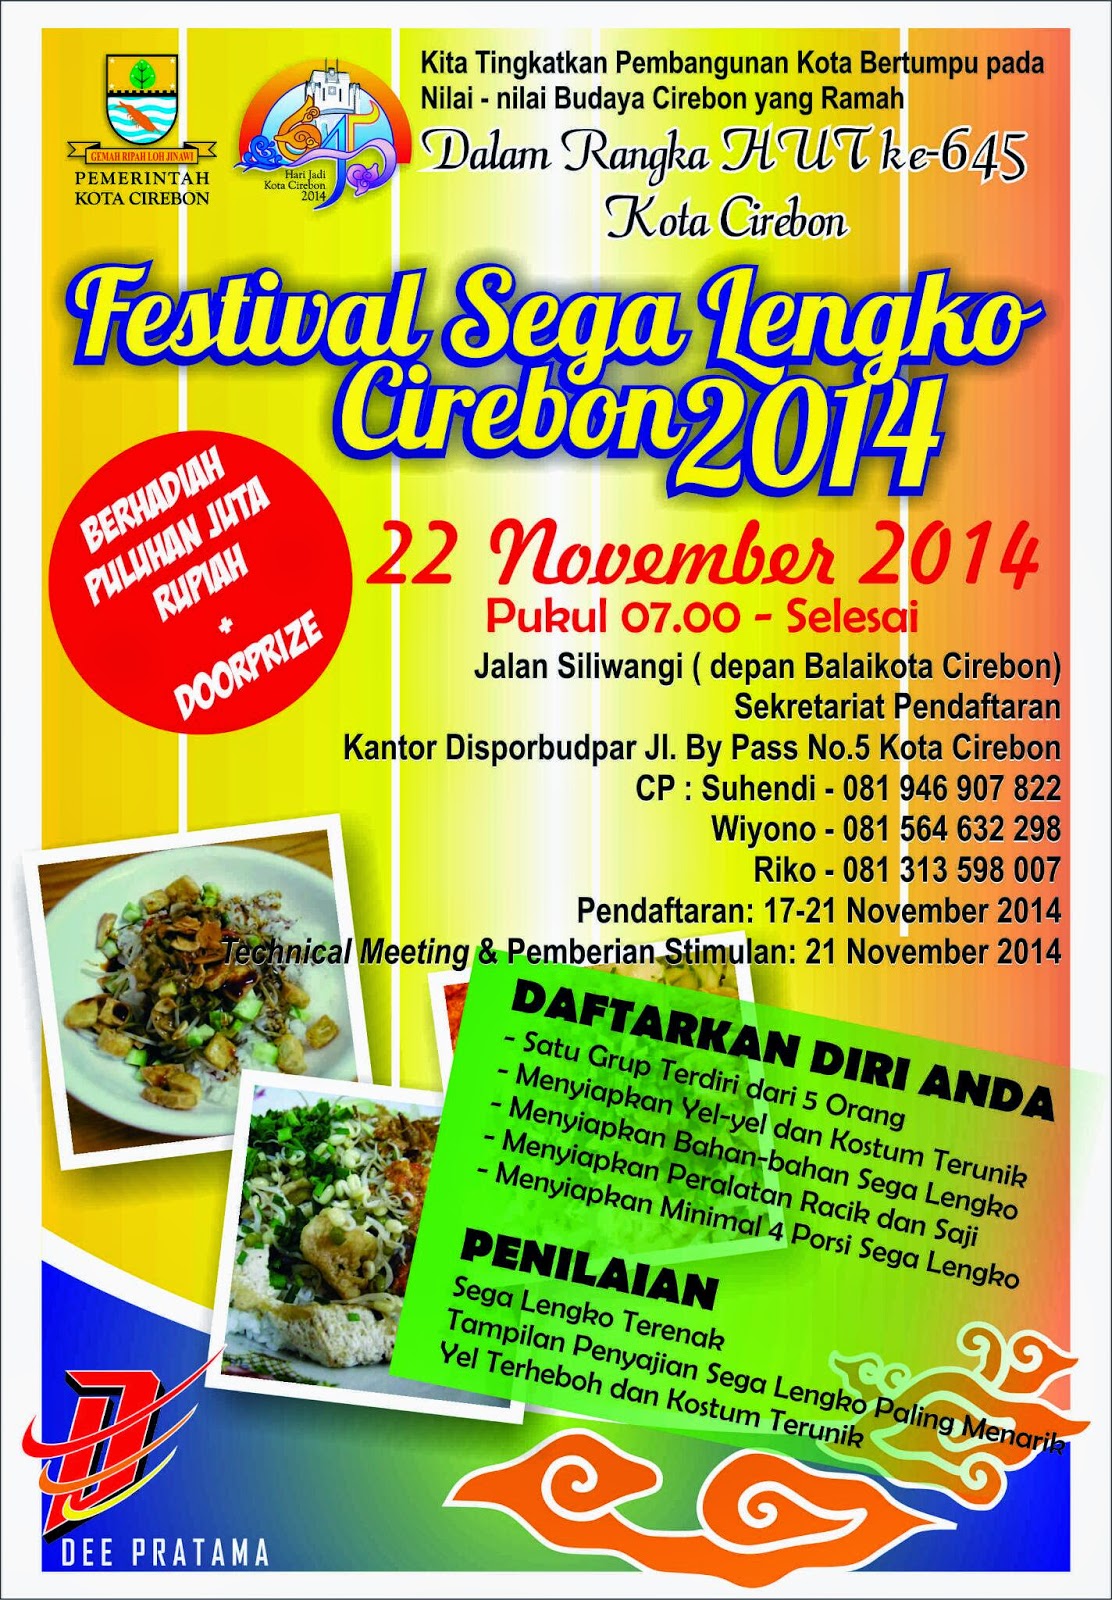 Festival Sega Lengko dalam rangka HUT ke-645 Kota Cirebon 